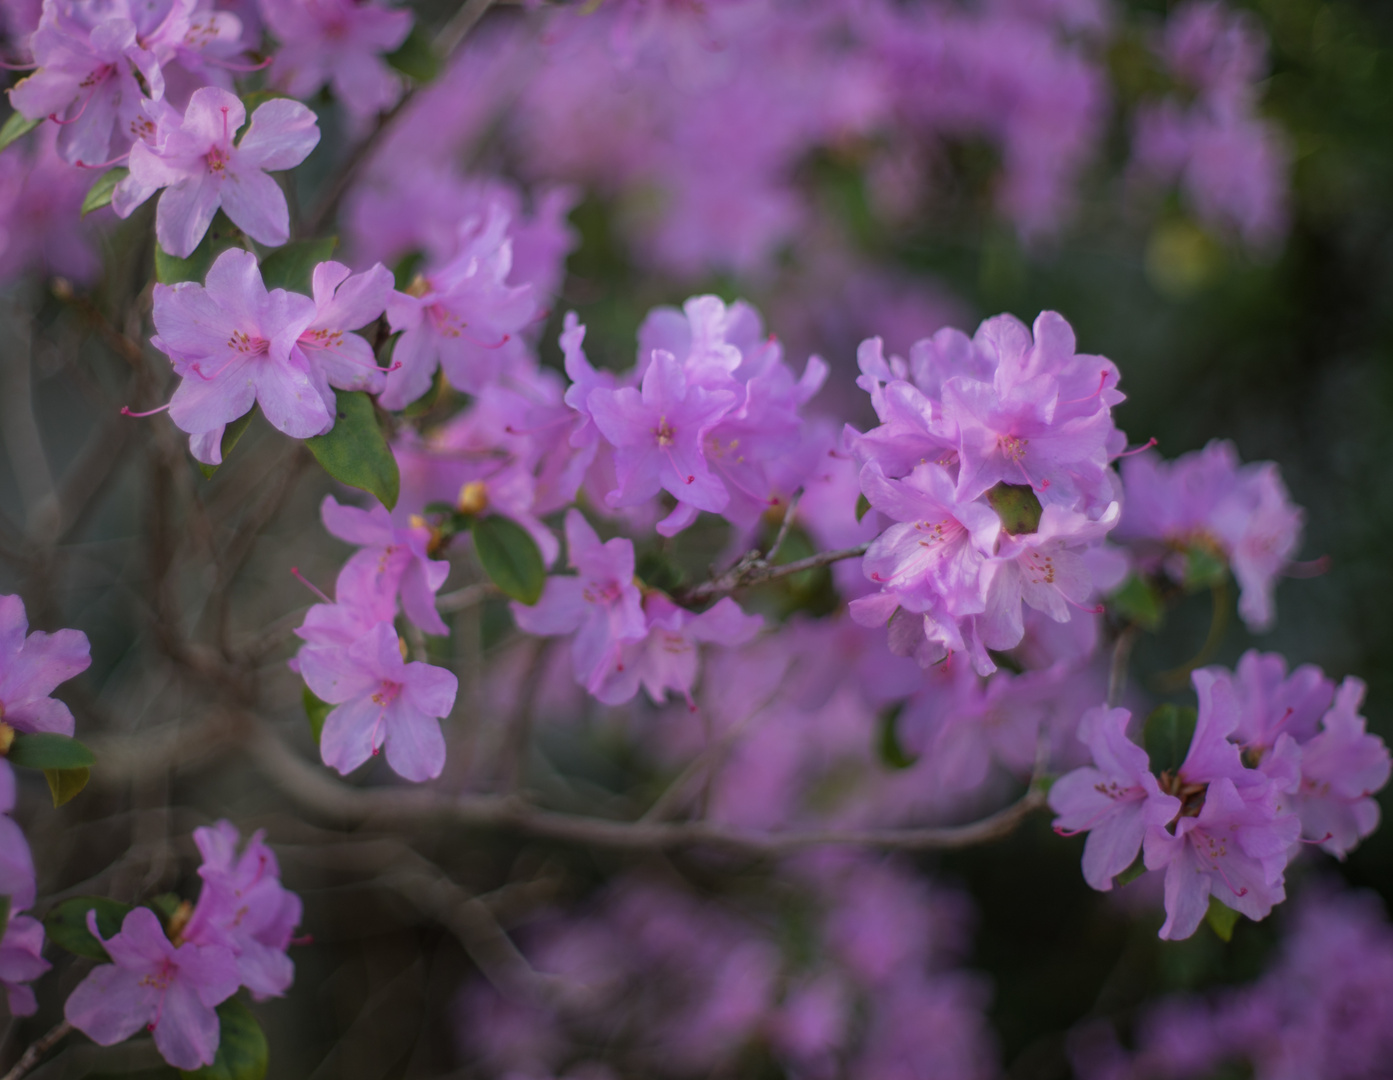 Rhododendronblüten mit Super Takumar 1:1.4-50